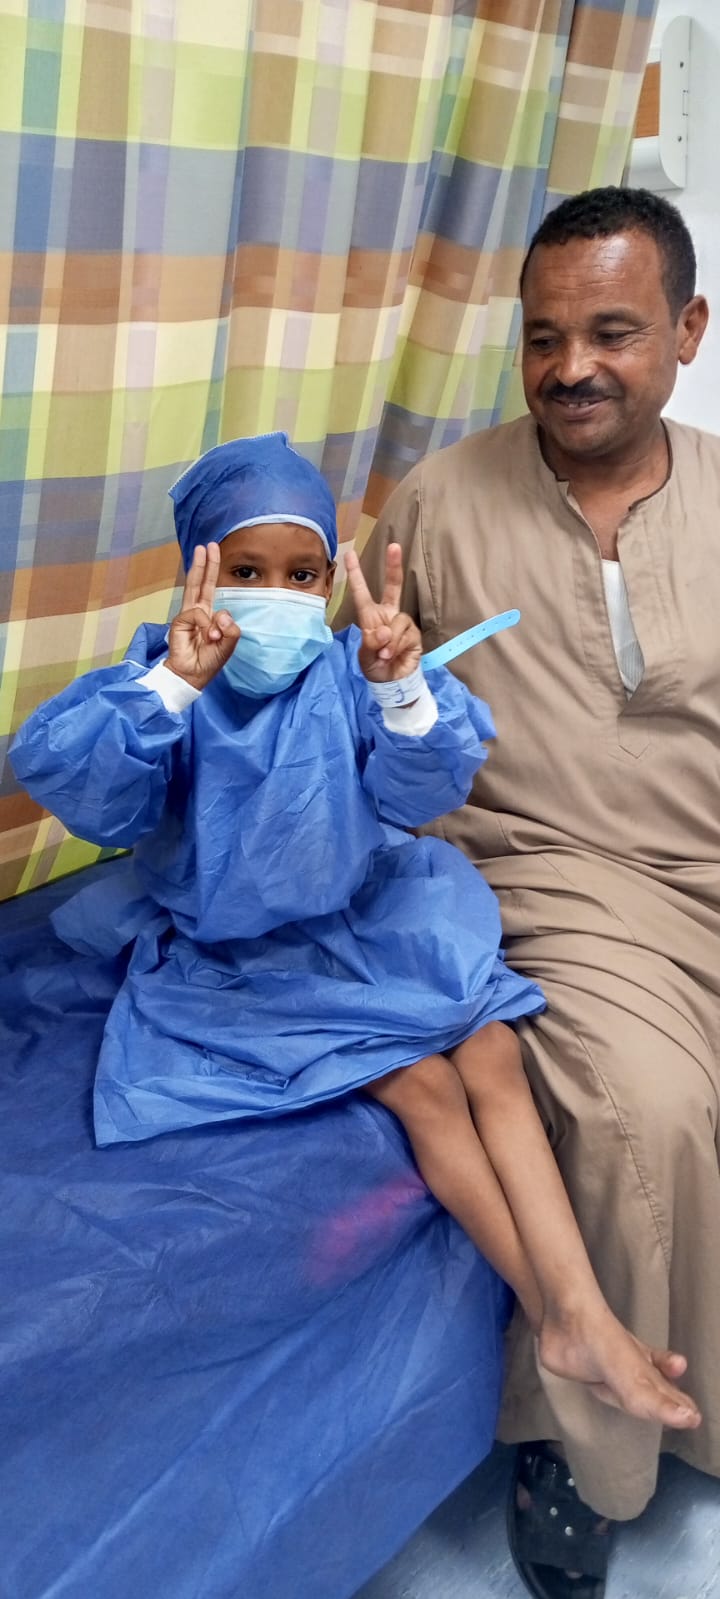 فرحة طفل عقب عملية جراحية بأحد المستشفيات